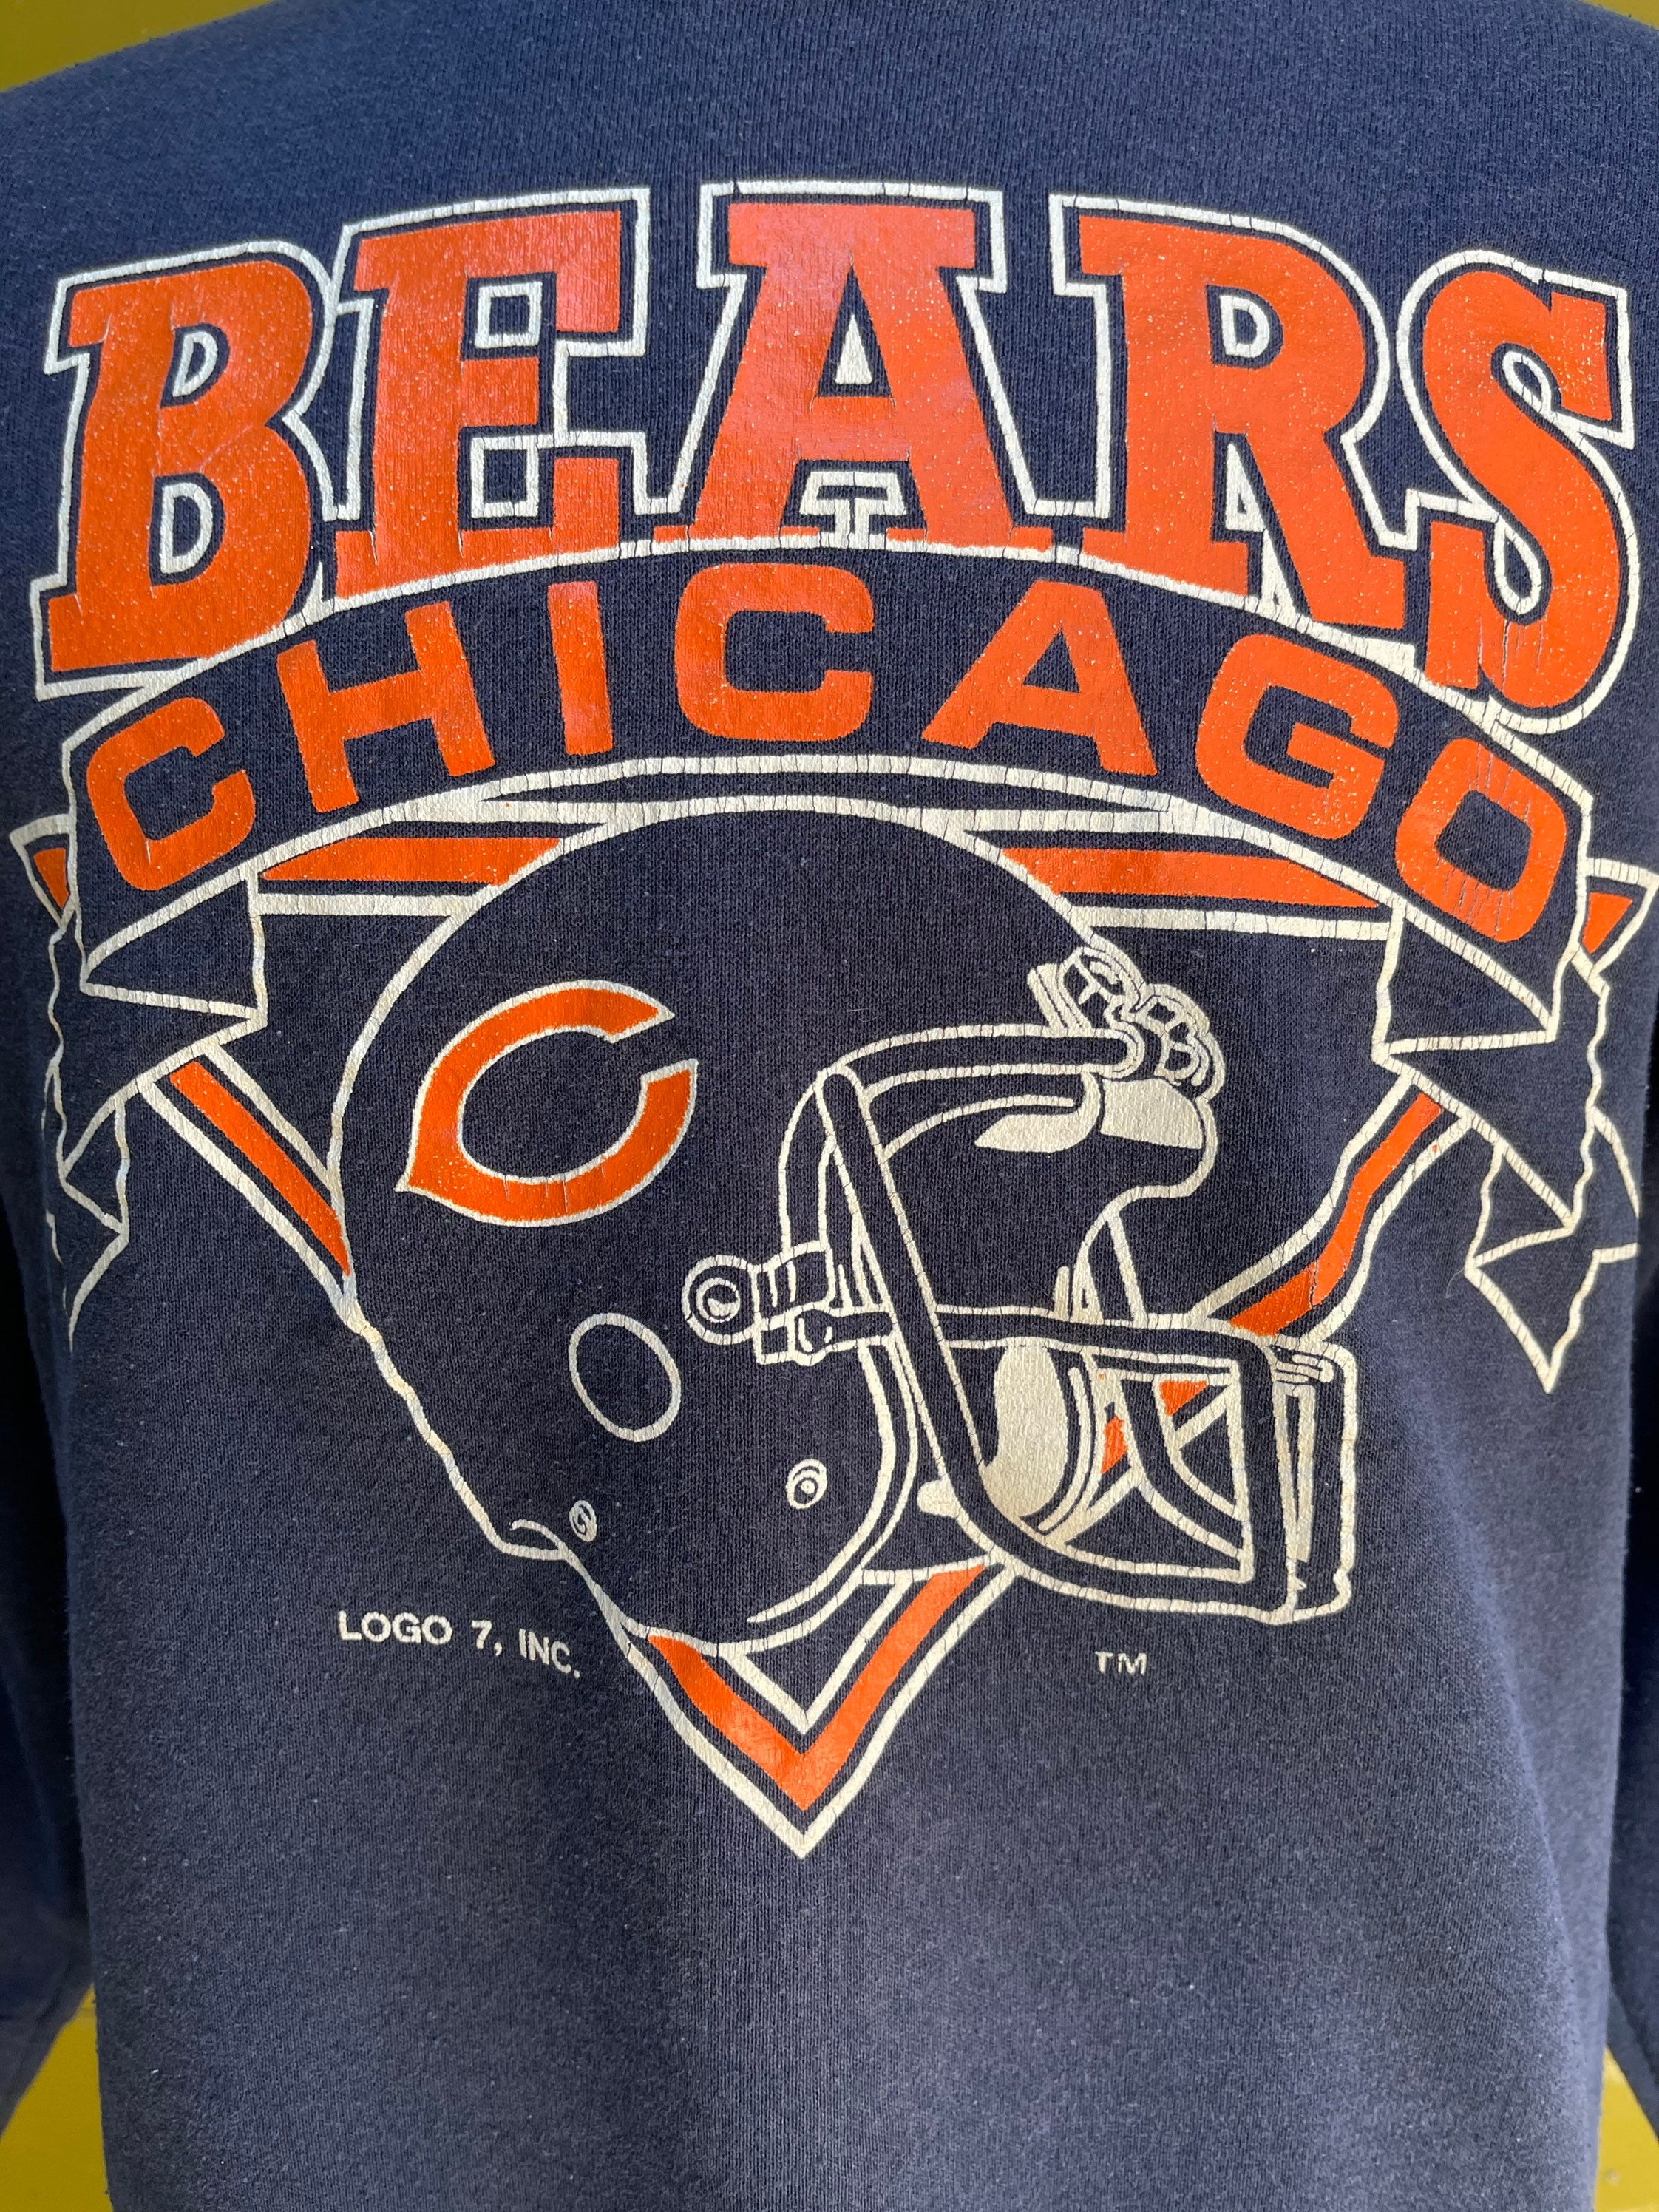 Vintage 1980s Chicago Bears Longsleeve Crewneck Sweatshirt by | Etsy